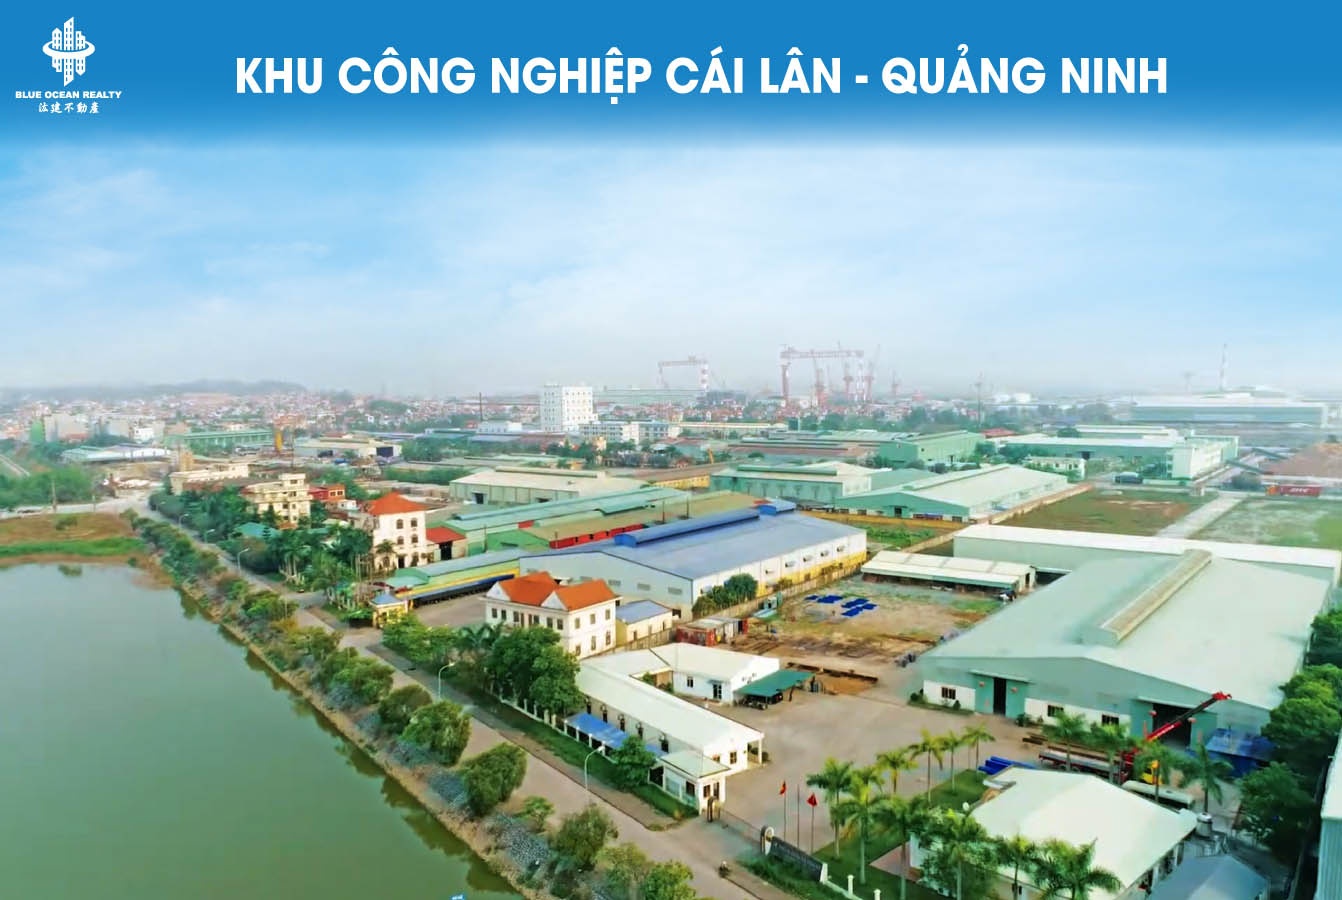 Khu công nghiệp (KCN) Cái Lân - Quảng Ninh